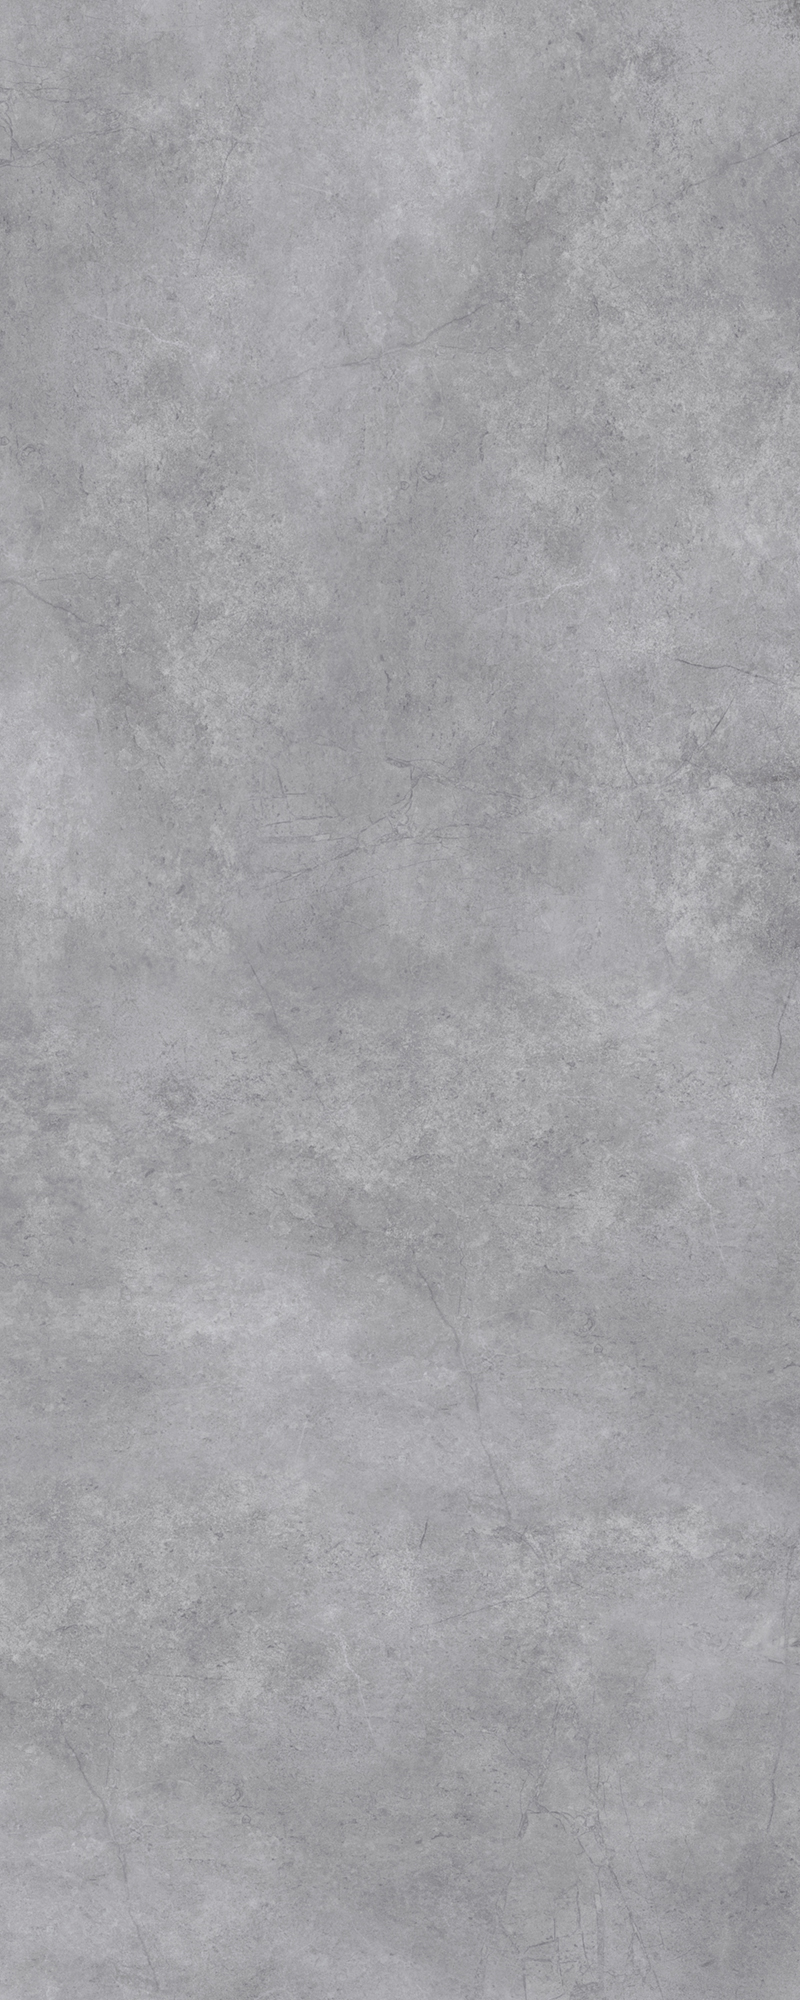 Barevná stěna, středně šedý beton - preloading